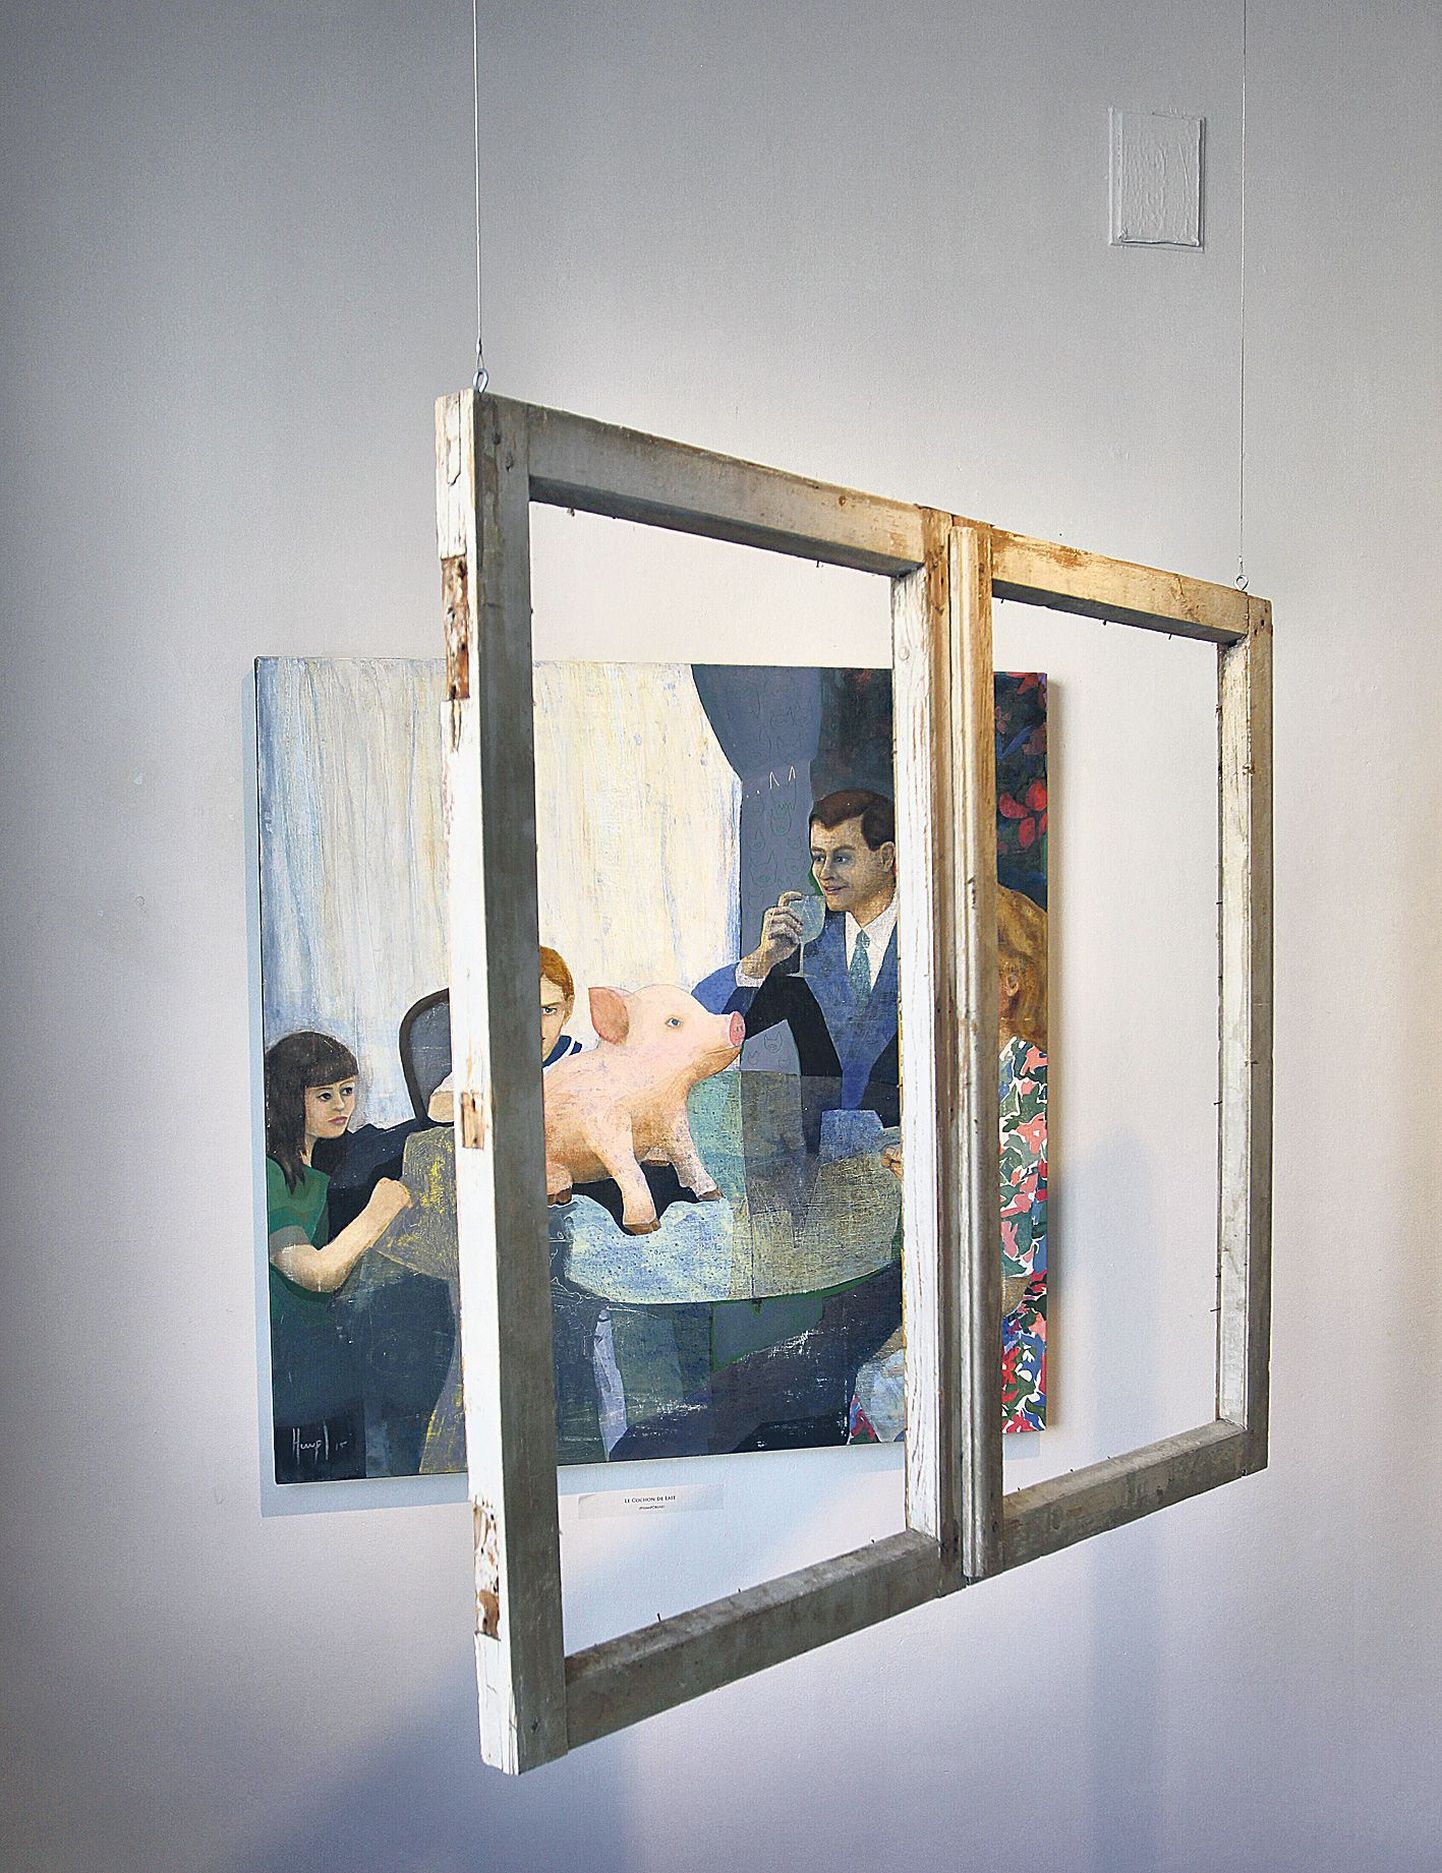 Huupi on oma maali «Le cochon de lait» («Piimapõrsas») juurde seadnud aknaraami.